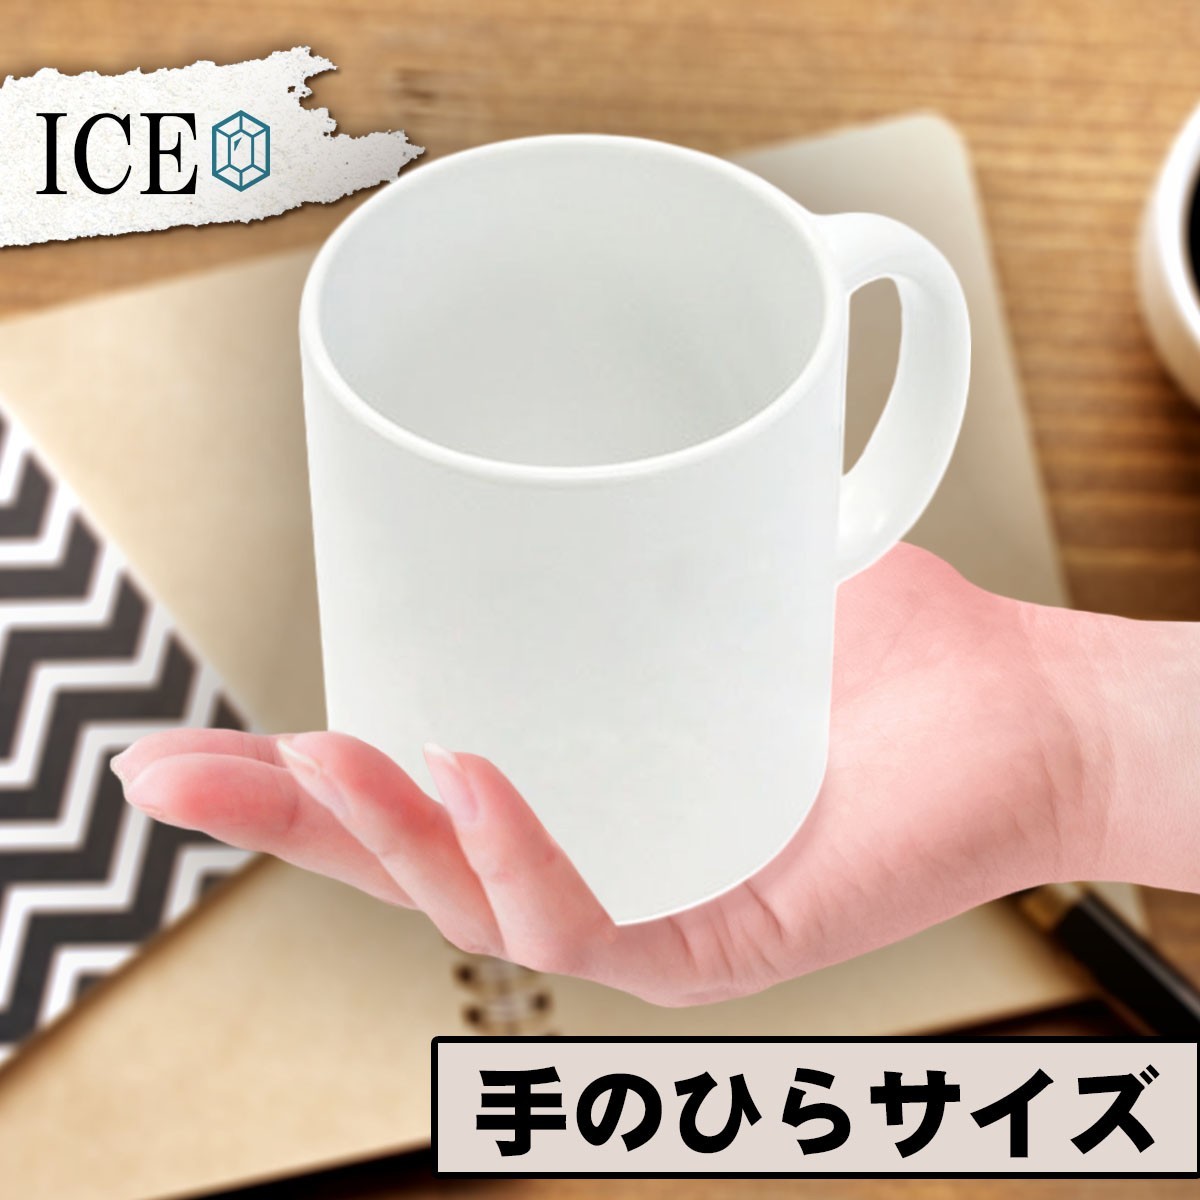 水玉模様 キュートなかえる おもしろ マグカップ コップ 陶器 可愛い かわいい 白 シンプル かわいい カッコイイ シュール 面白い ジョーク_画像2